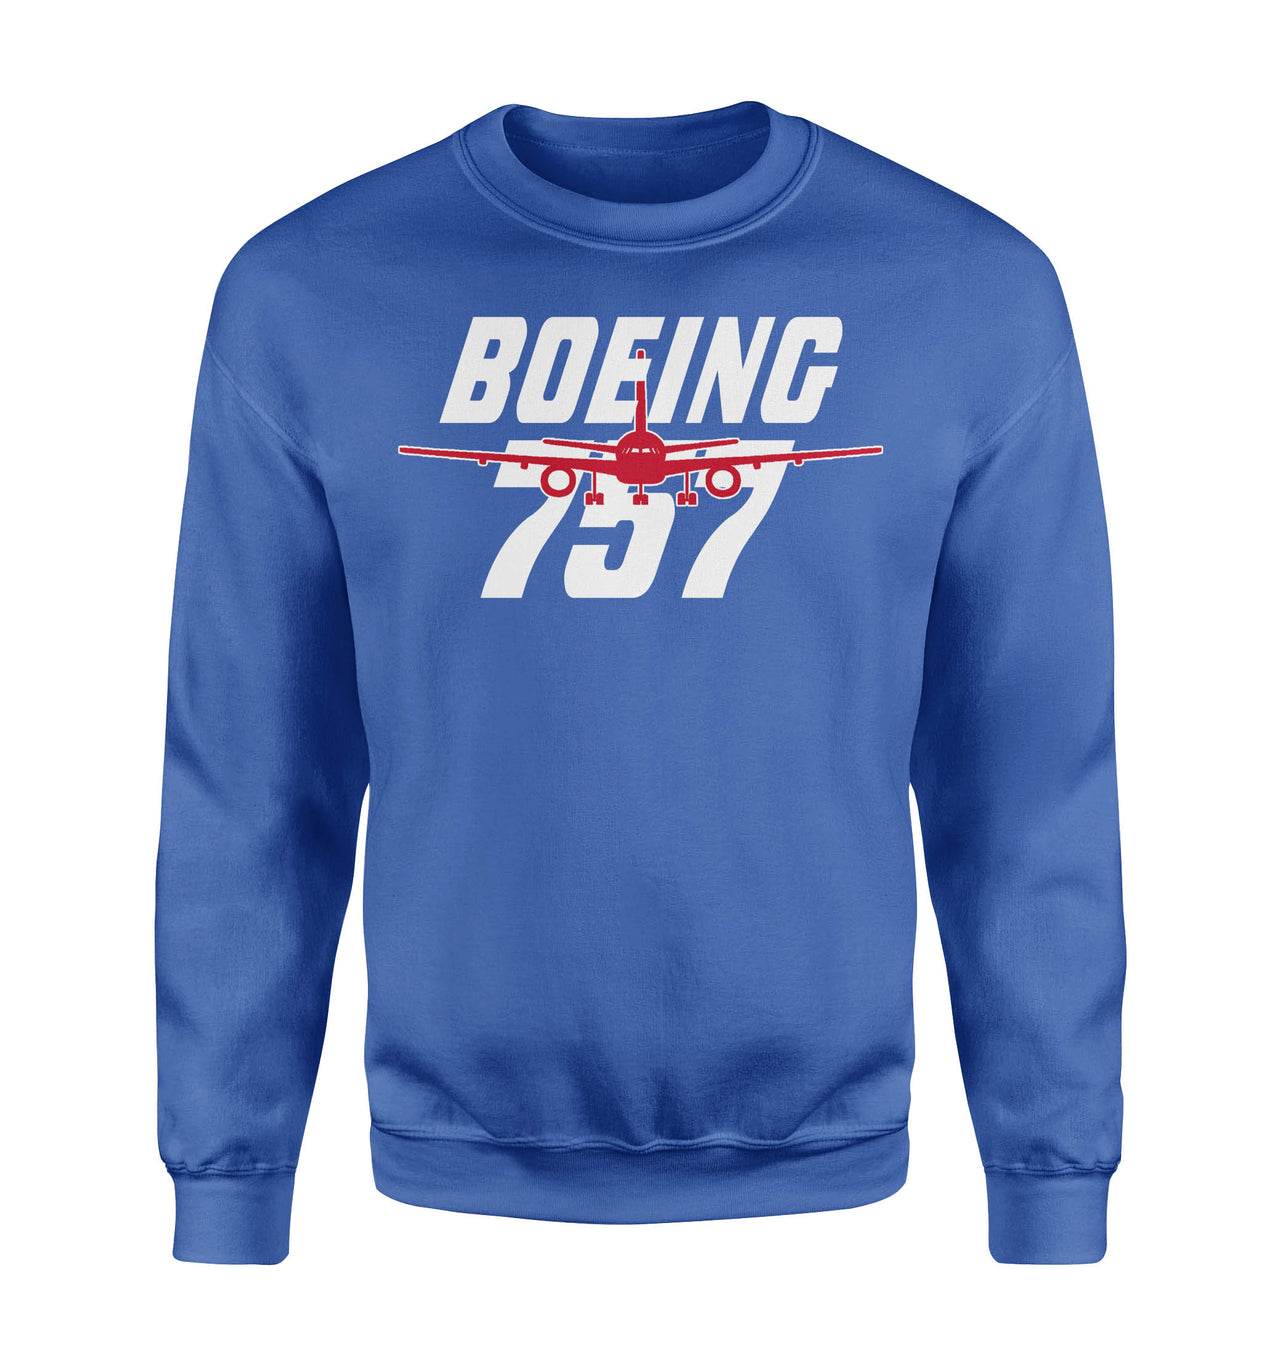 Amazing Boeing 757 Designed Sweatshirts